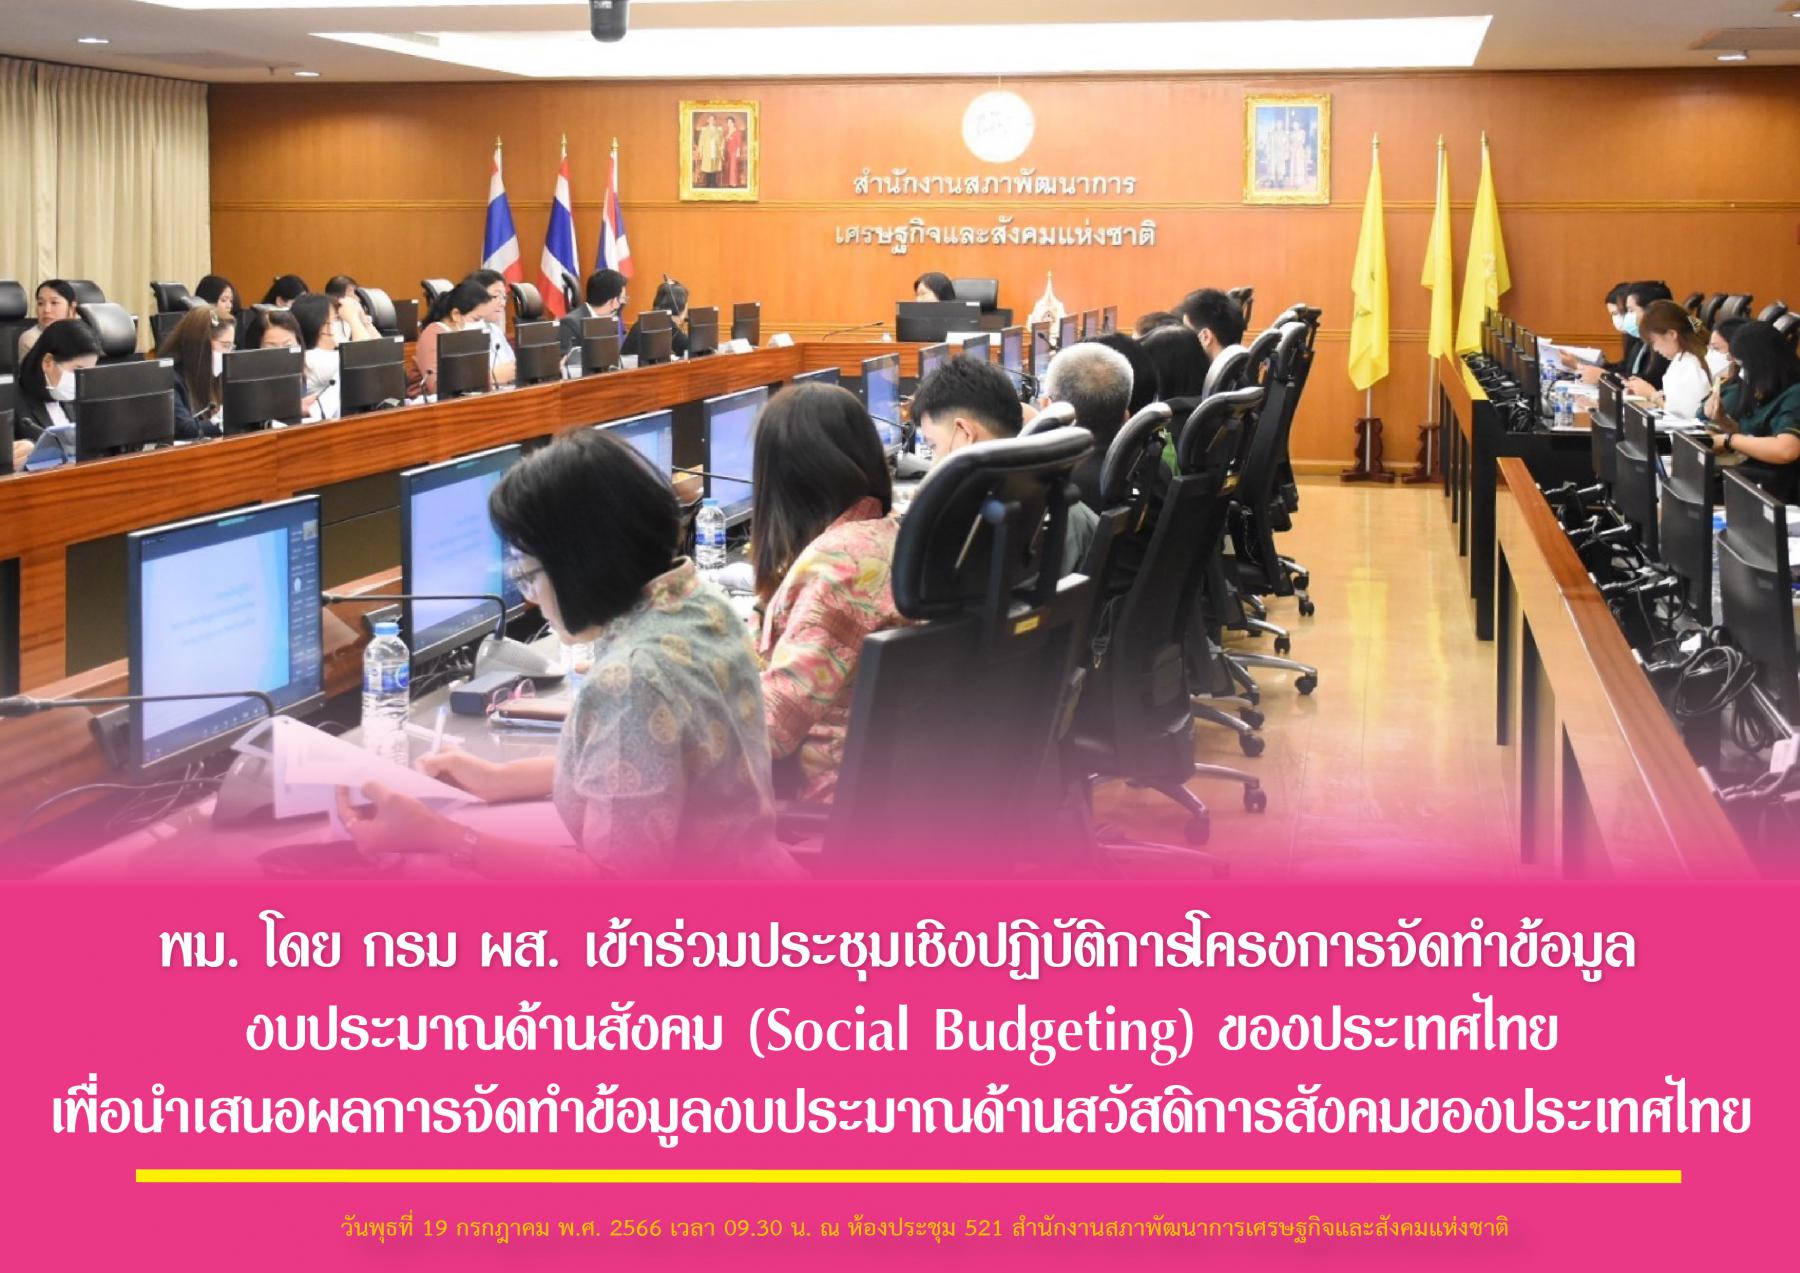 พม. โดย กรม ผส. เข้าร่วมประชุมเชิงปฏิบัติการโครงการจัดทำข้อมูลงบประมาณด้านสังคม (Social Budgeting) ของประเทศไทย